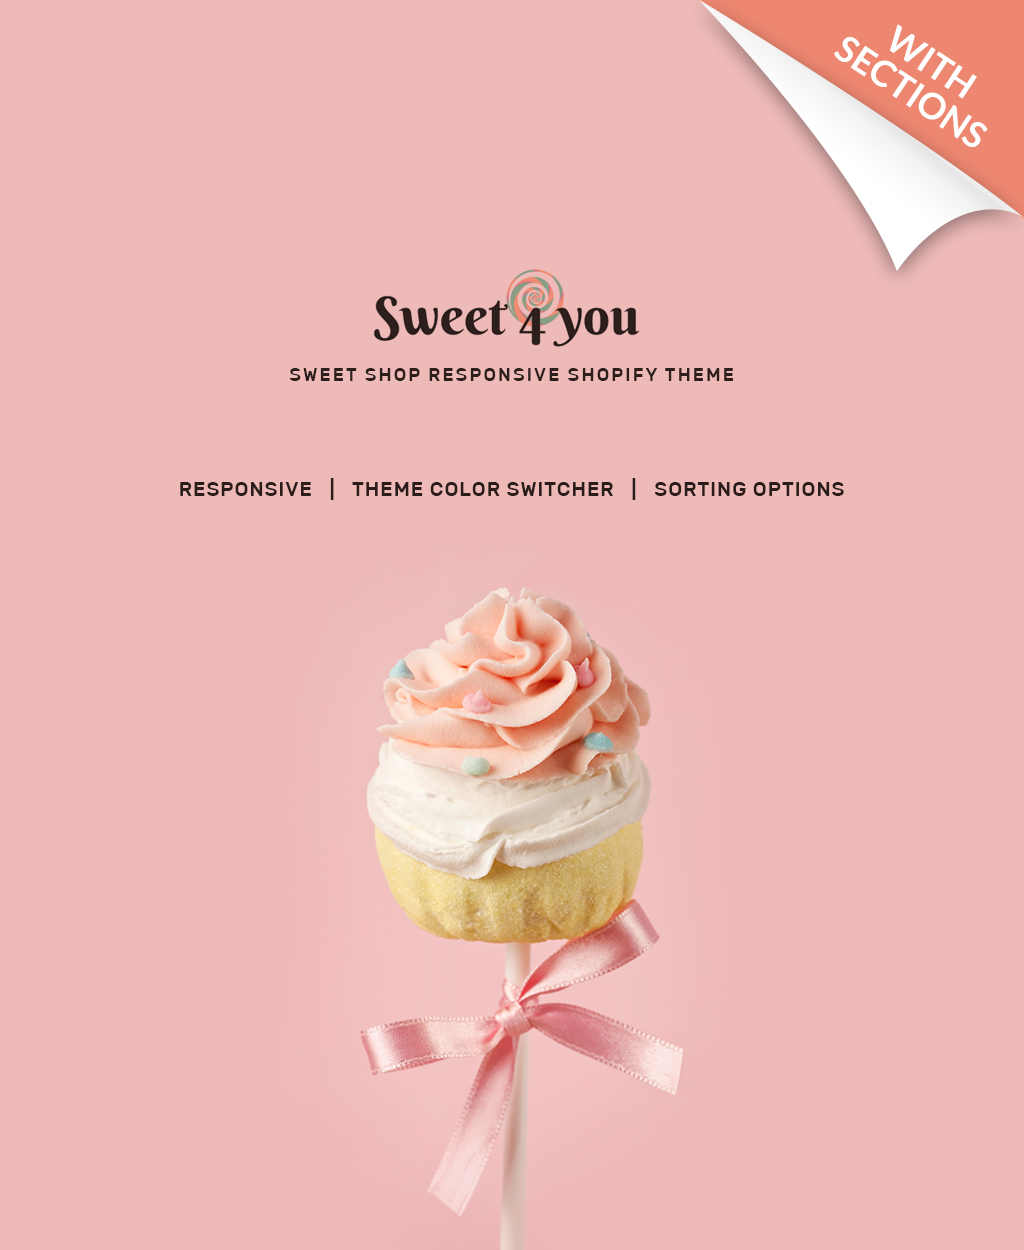 Sweet Shop Responsive Shopify Theme